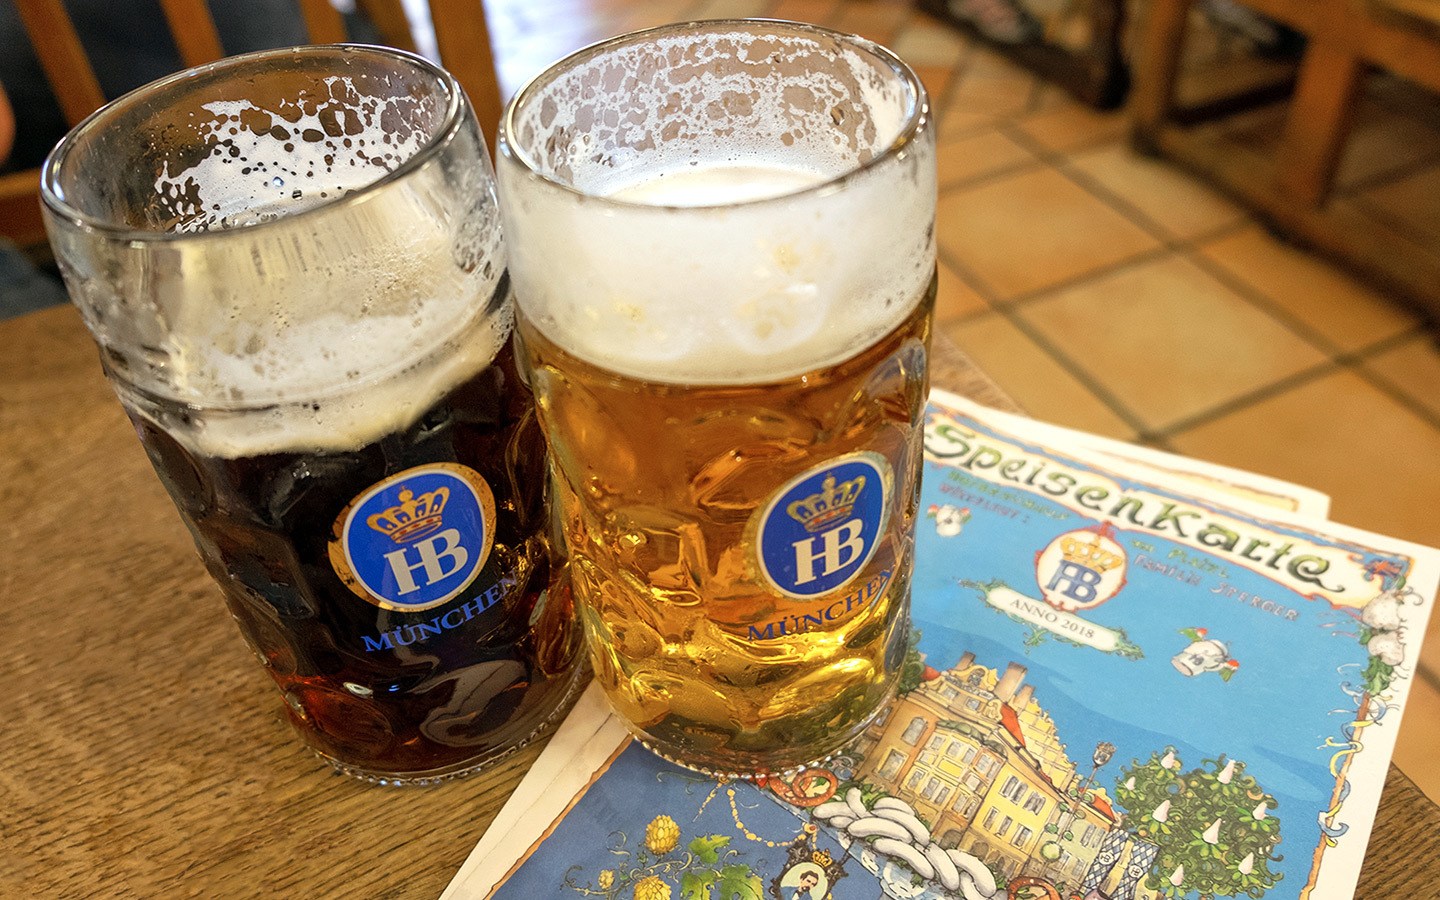 Beers in the Hofbräuhaus beer hall